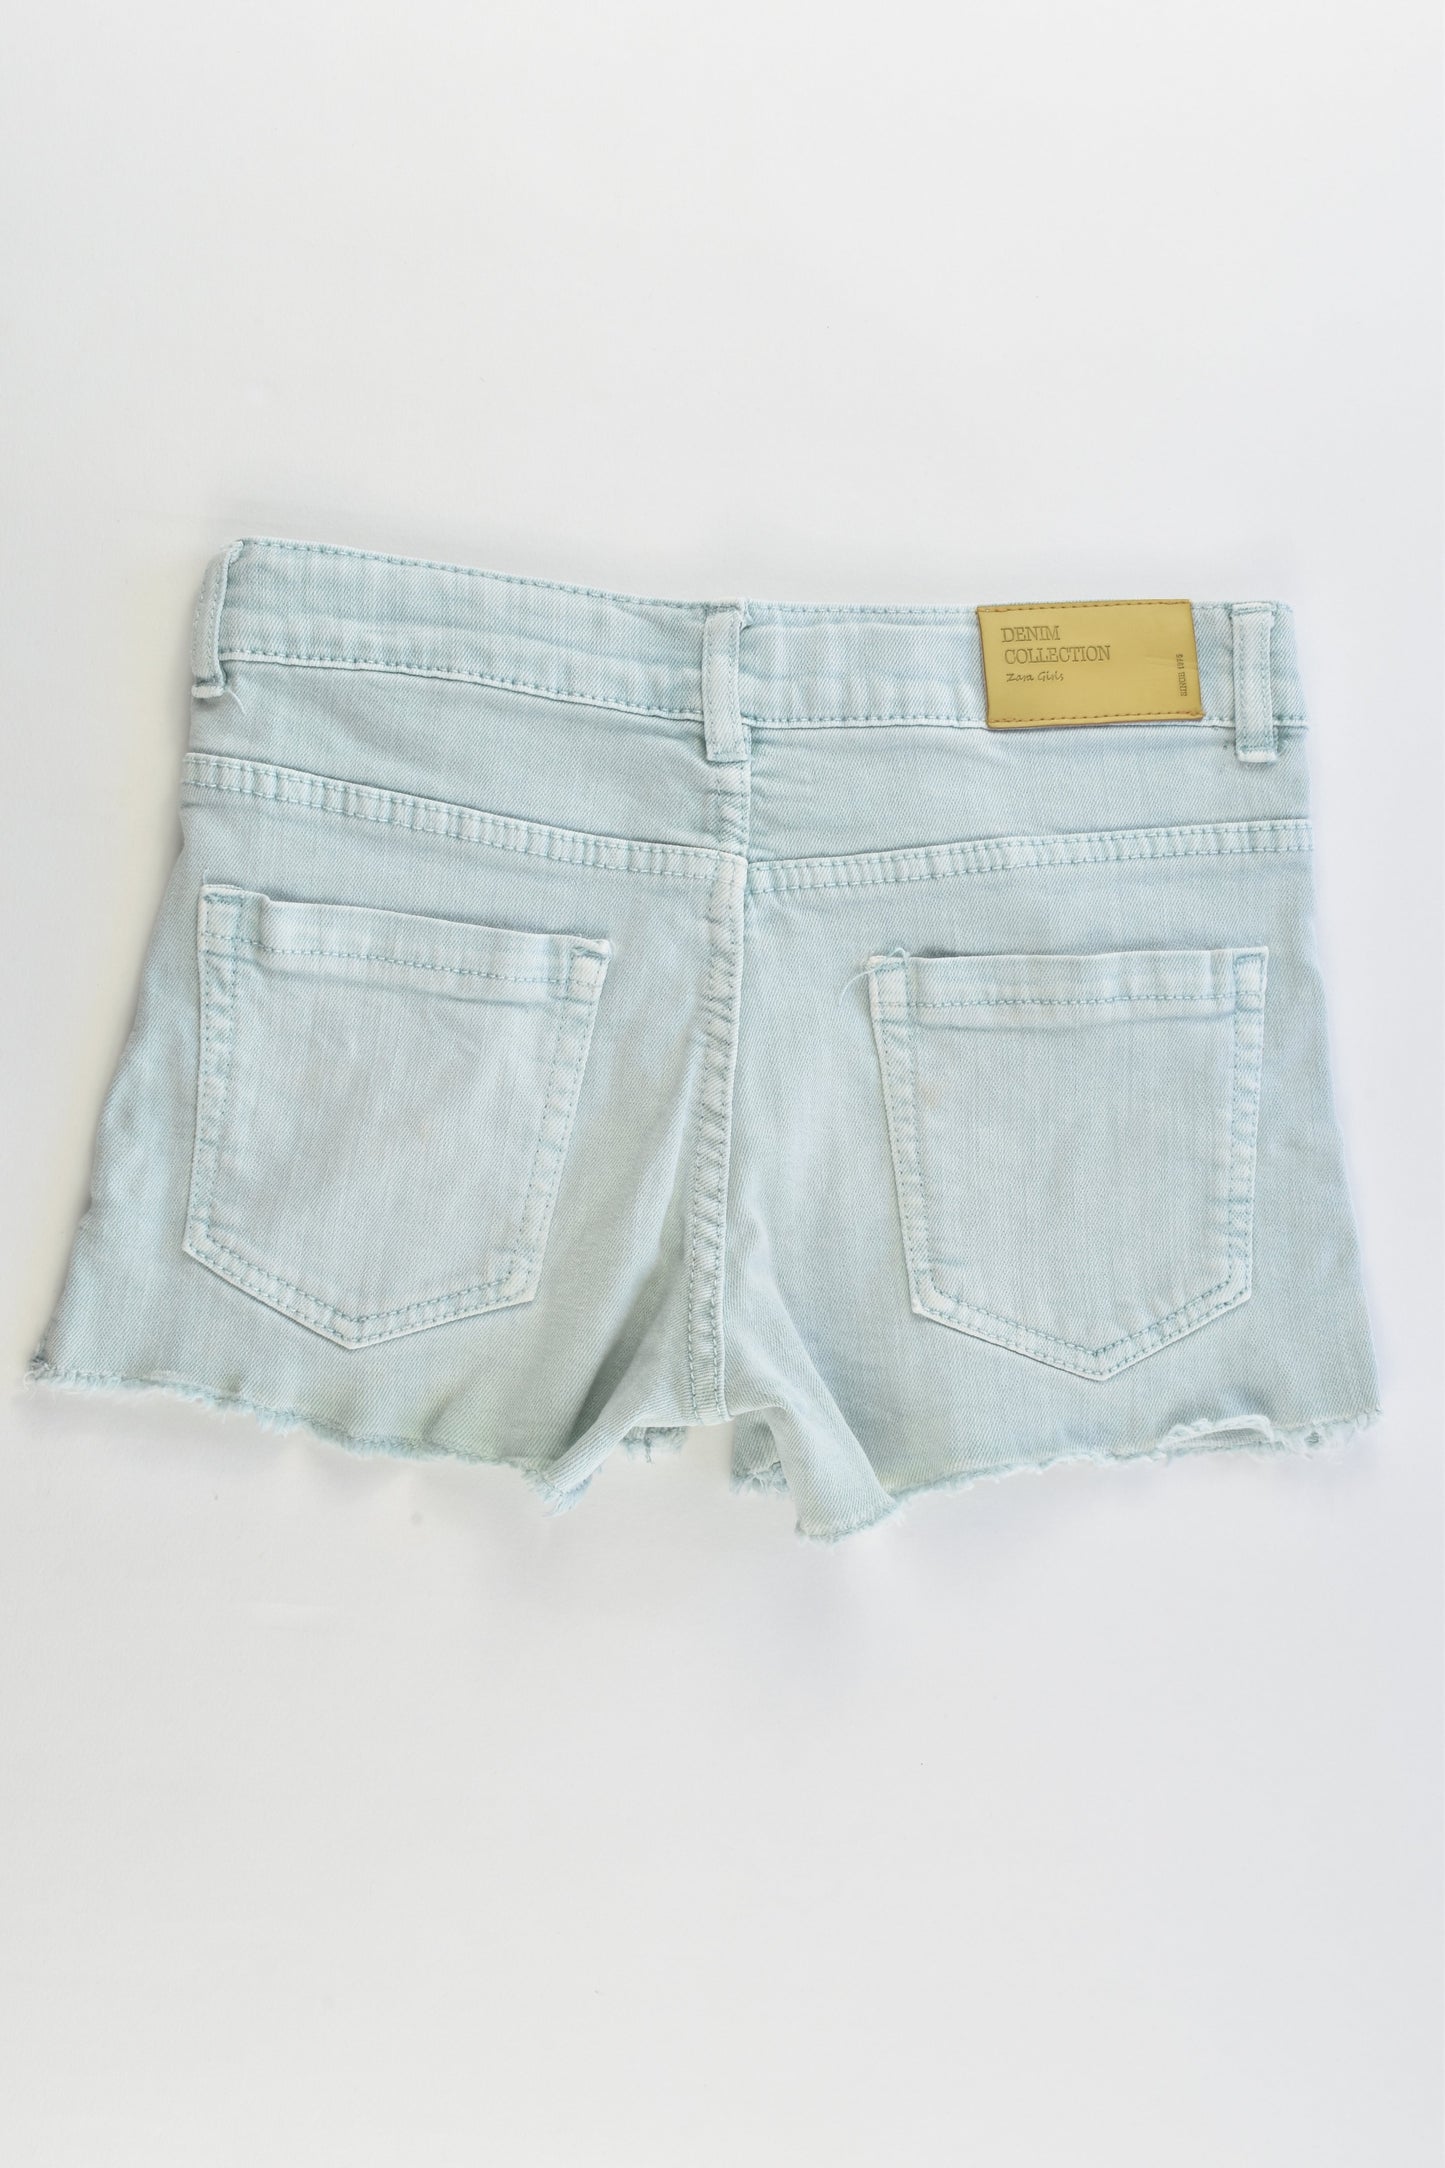 Zara Size 9 (134 cm) Stretchy Denim Shorts